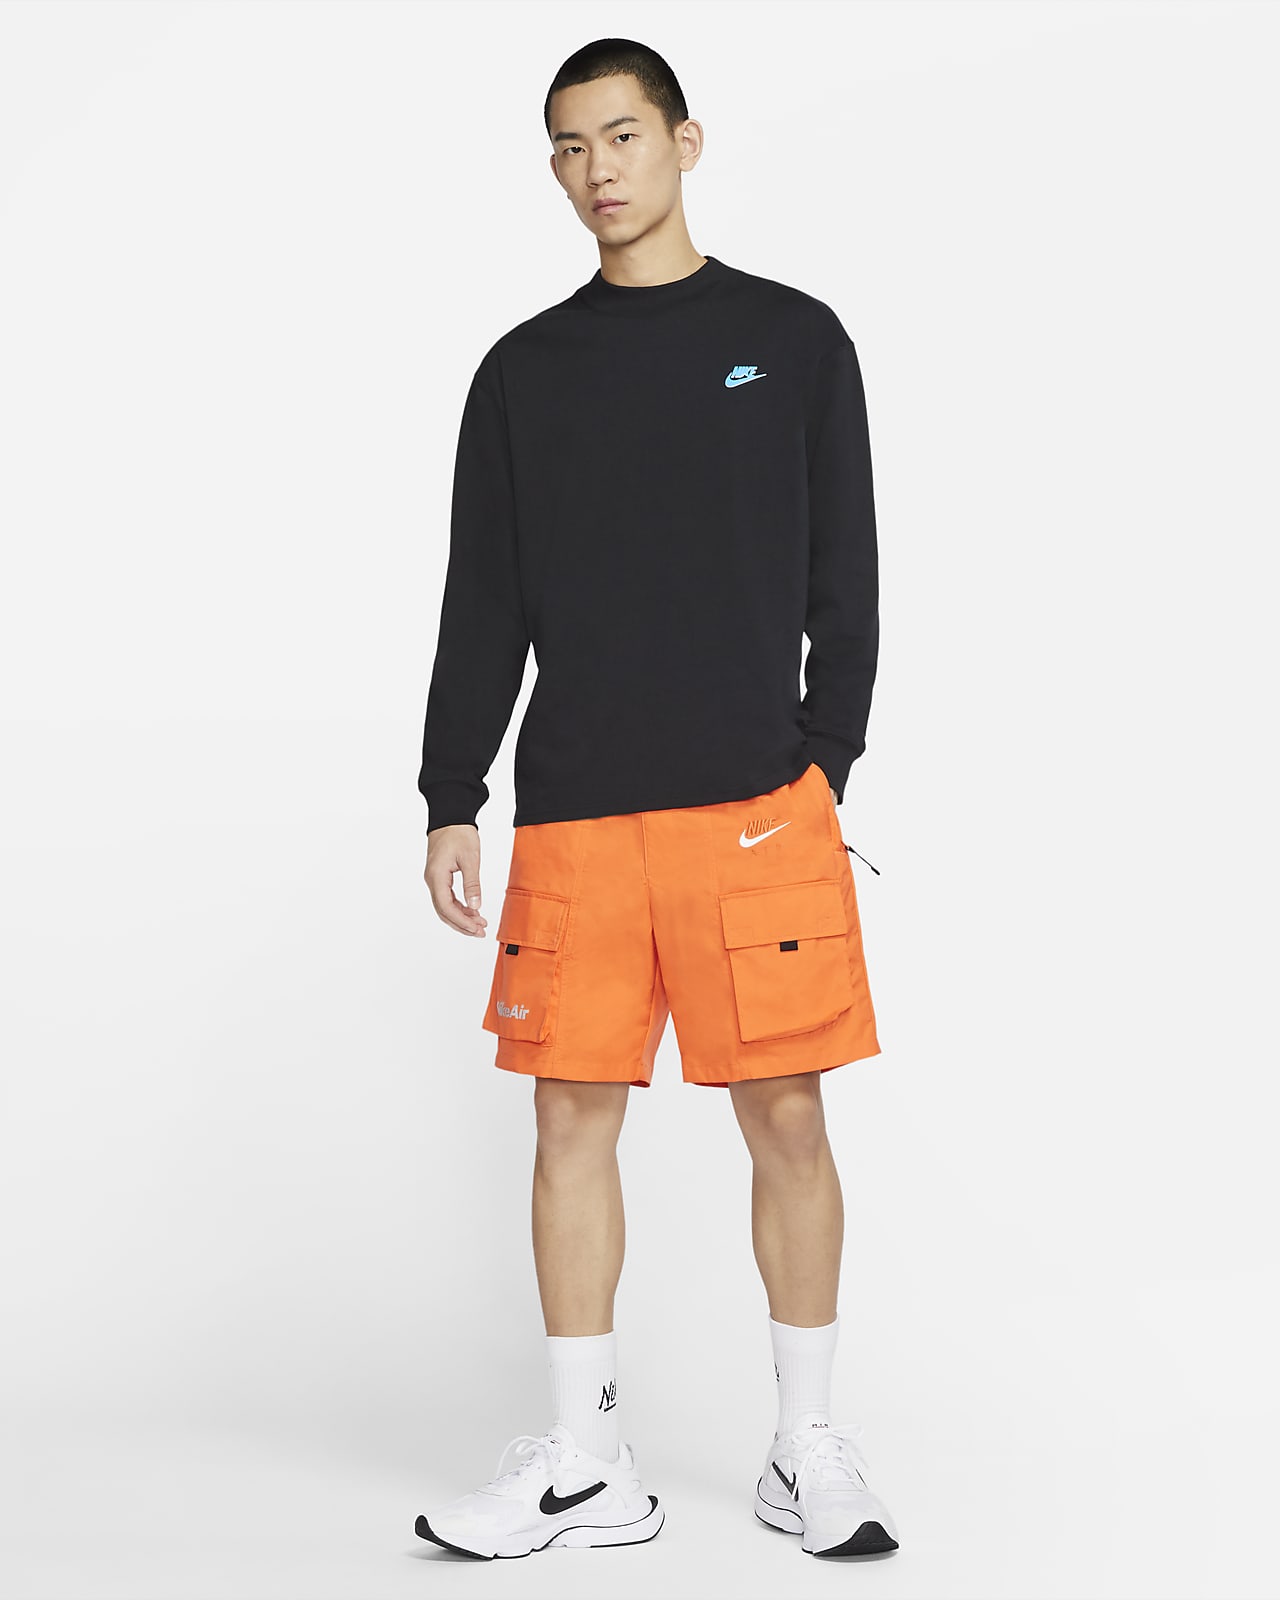 Nike Sportswear 男子长袖上衣-NIKE 中文官方网站